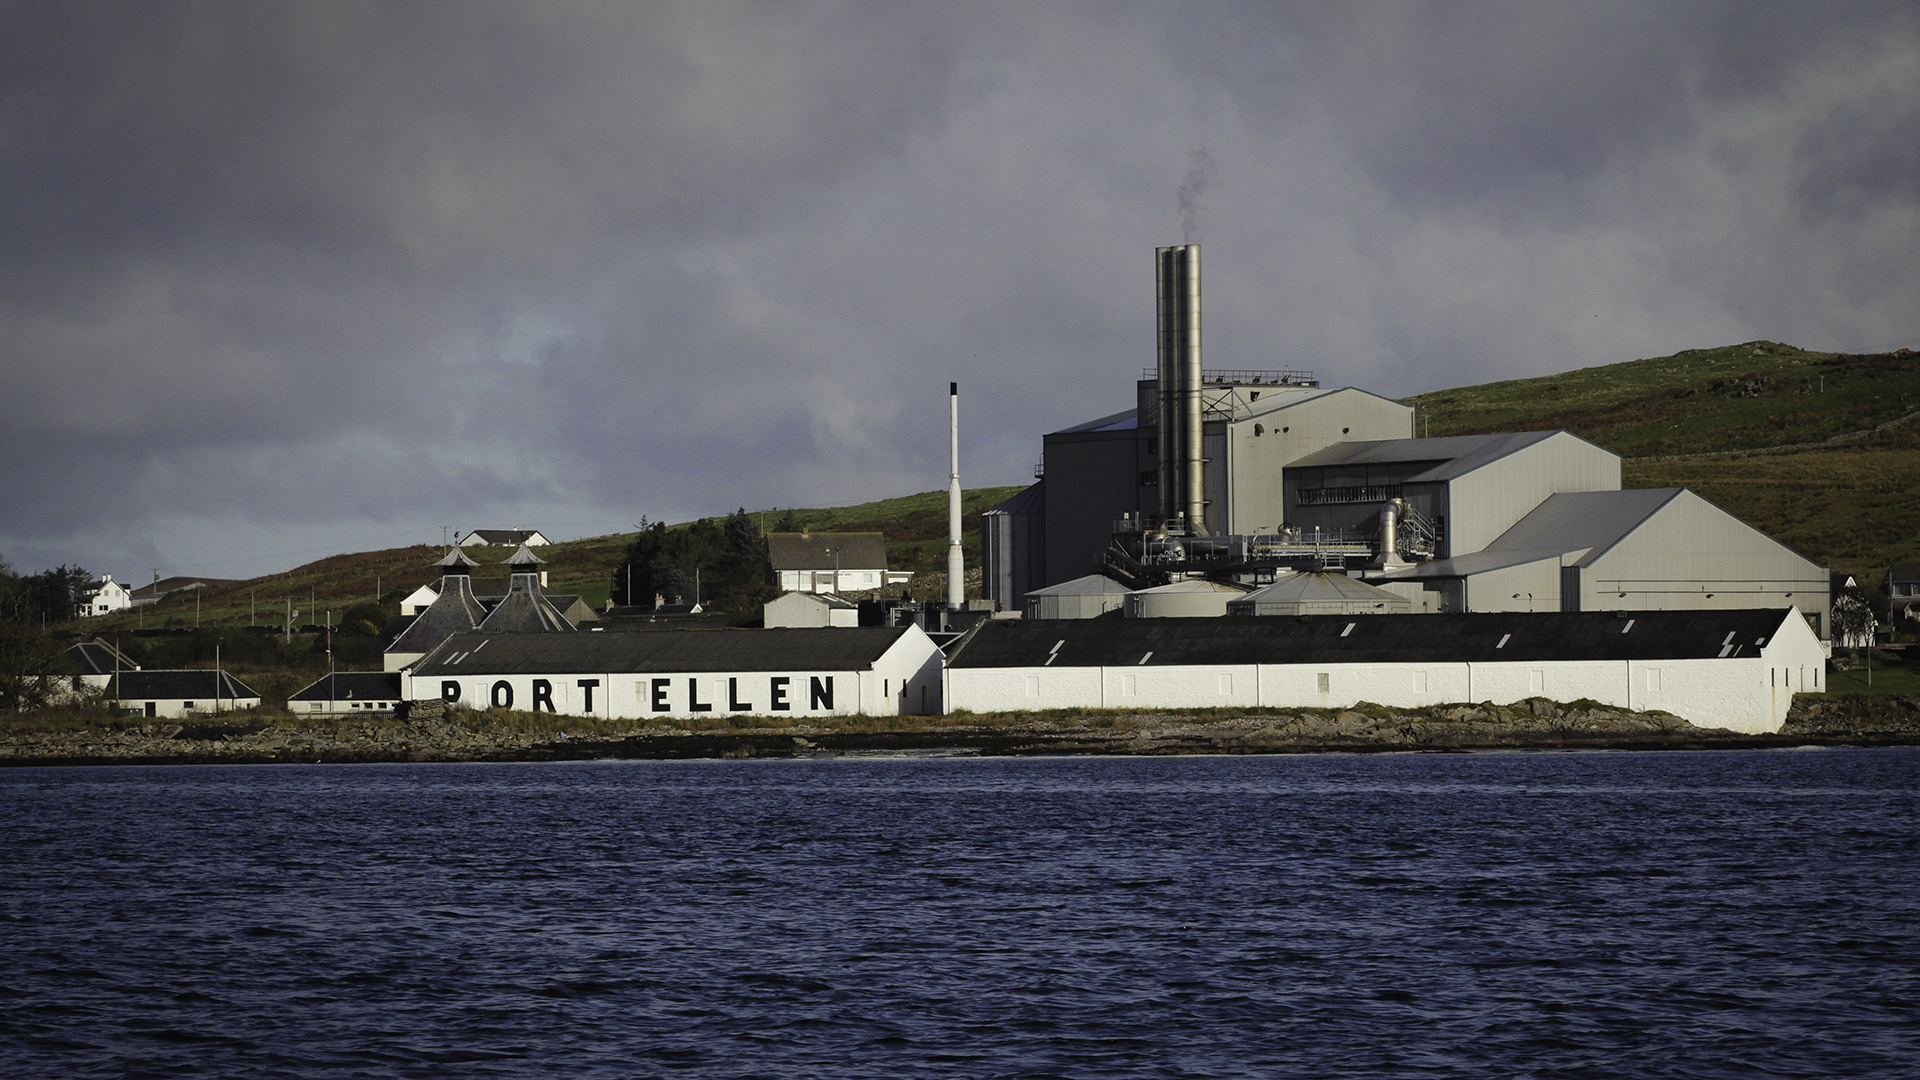 The Port Ellen Maltings in Port Ellen, Scotland. Photo ©2016, Mark Gillespie/CaskStrength Media.